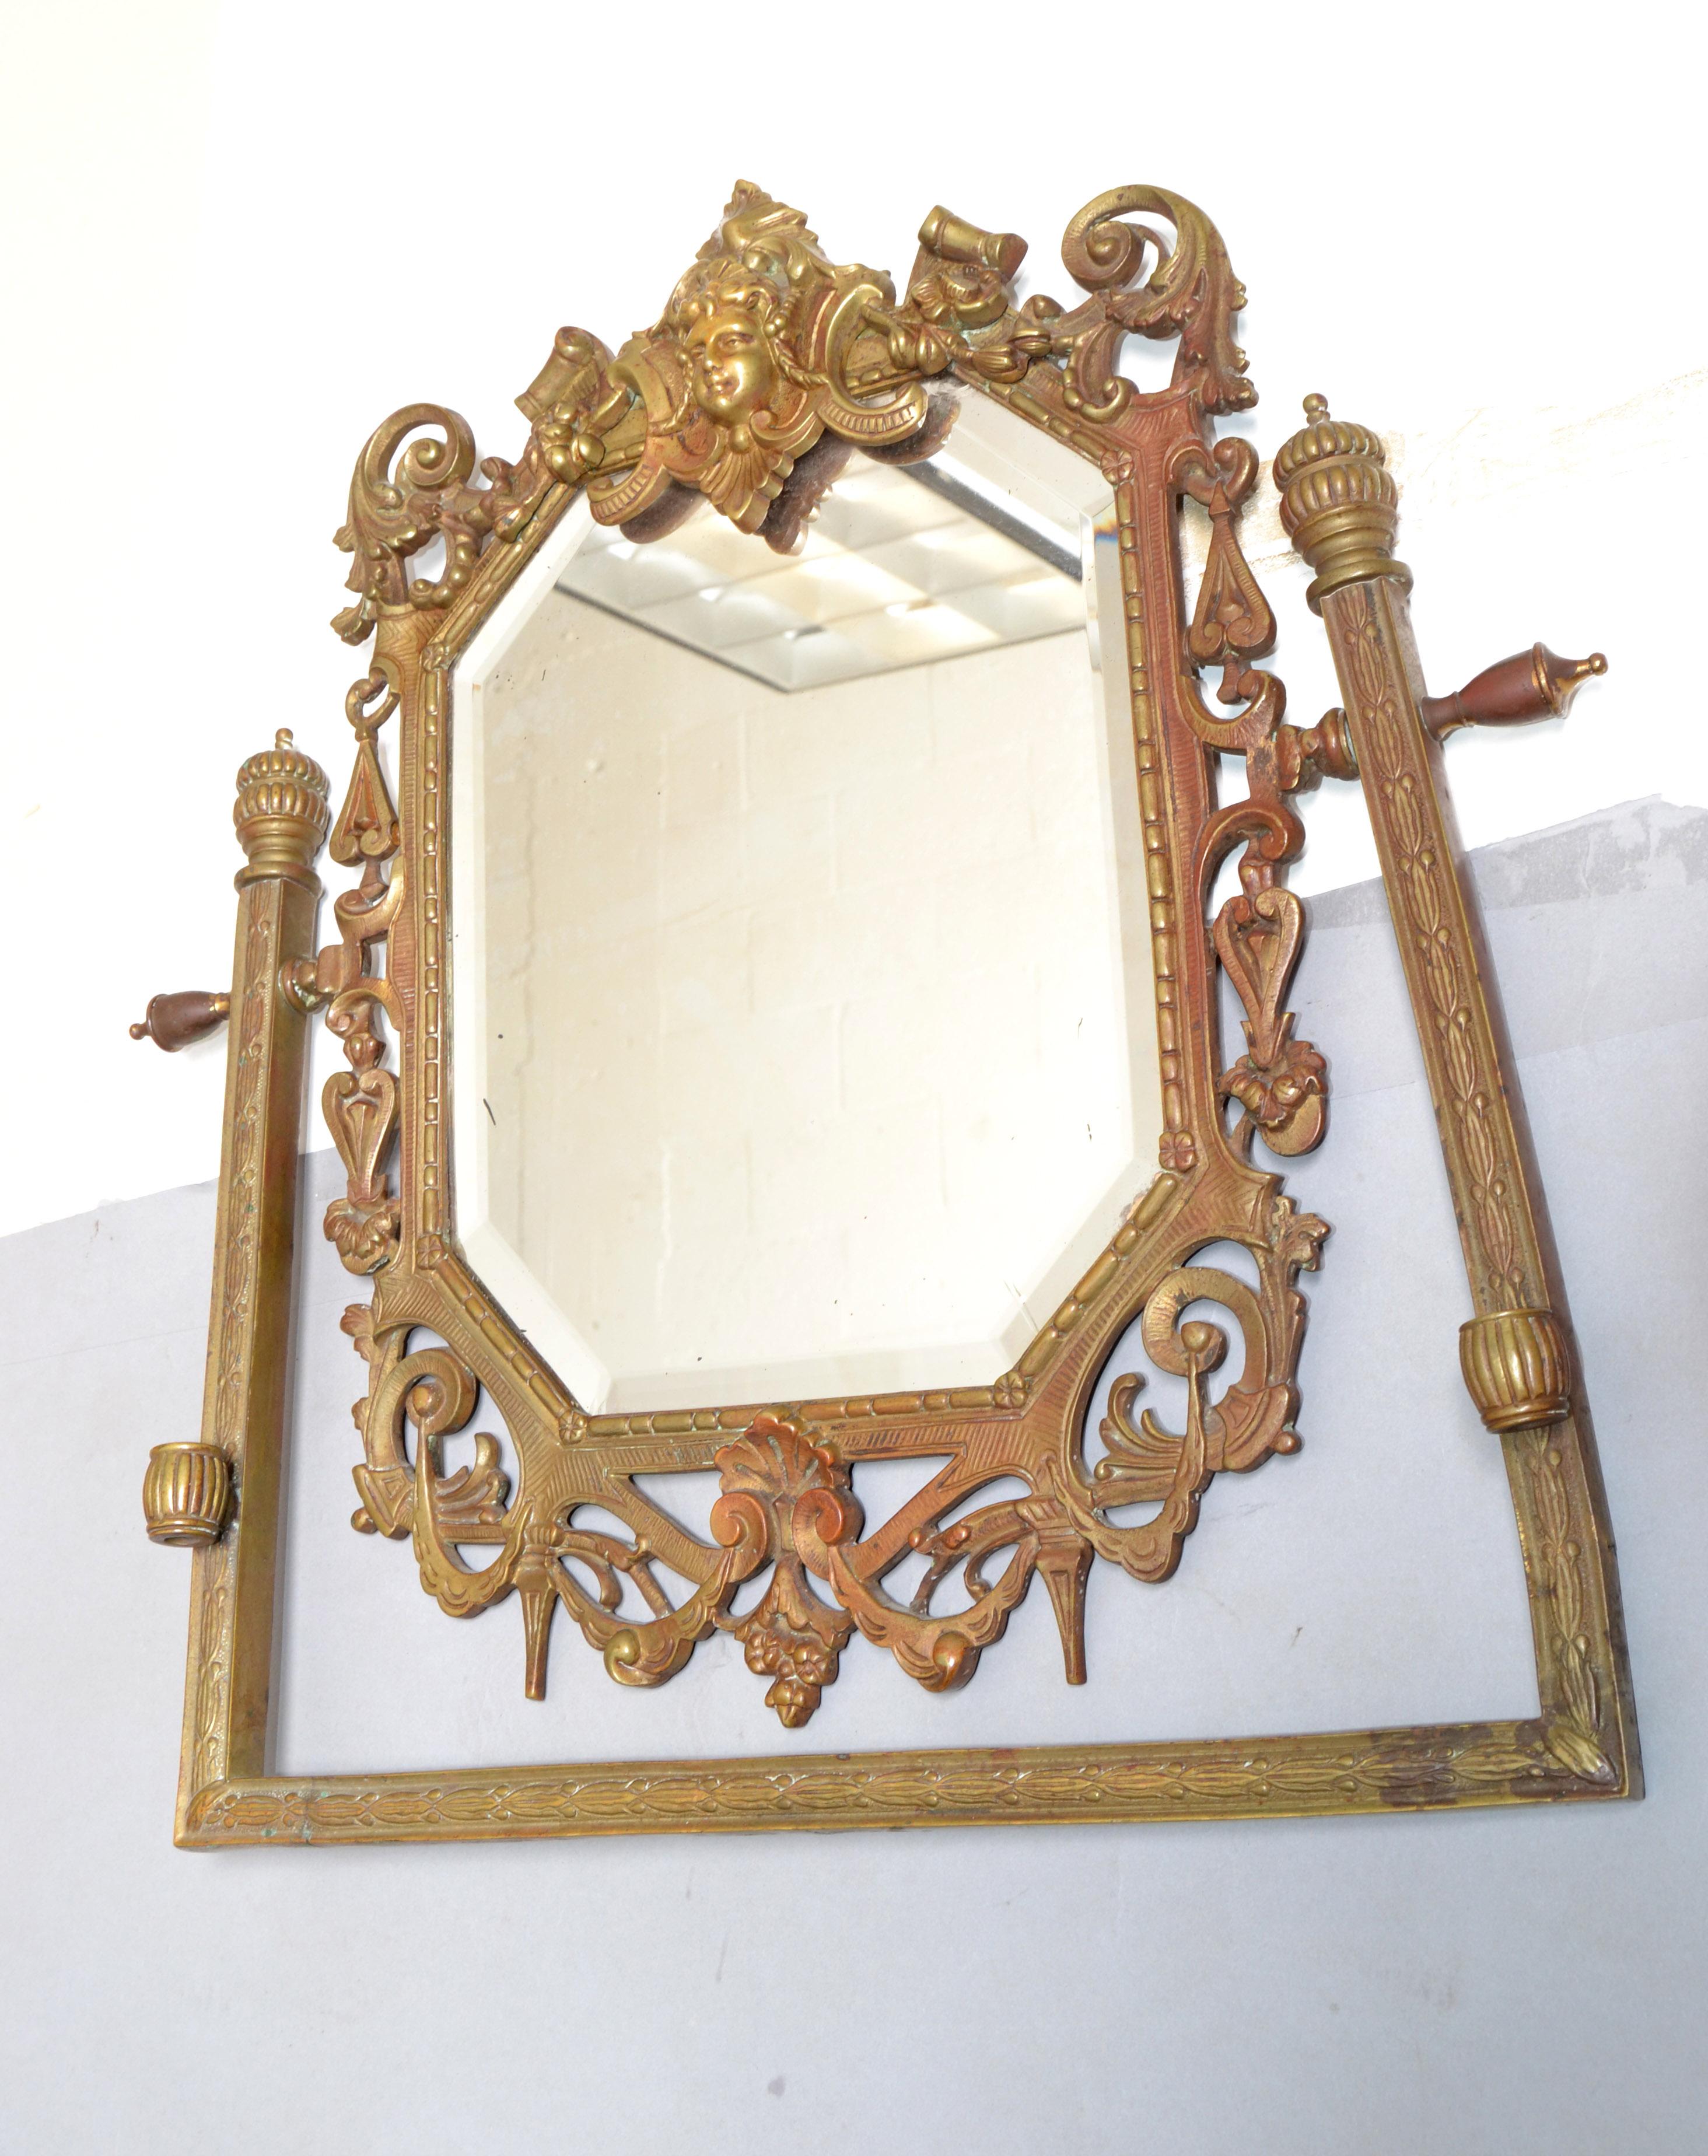 Rechteckiger Wandspiegel aus französischer Barockbronze, verziert mit Engel, Akanthusblatt und Muschelmuster.  
Das originale achteckige Spiegelglas ist abgeschrägt und weist einige altersbedingte Stockflecken auf.
Wir glauben, dass es aus dem